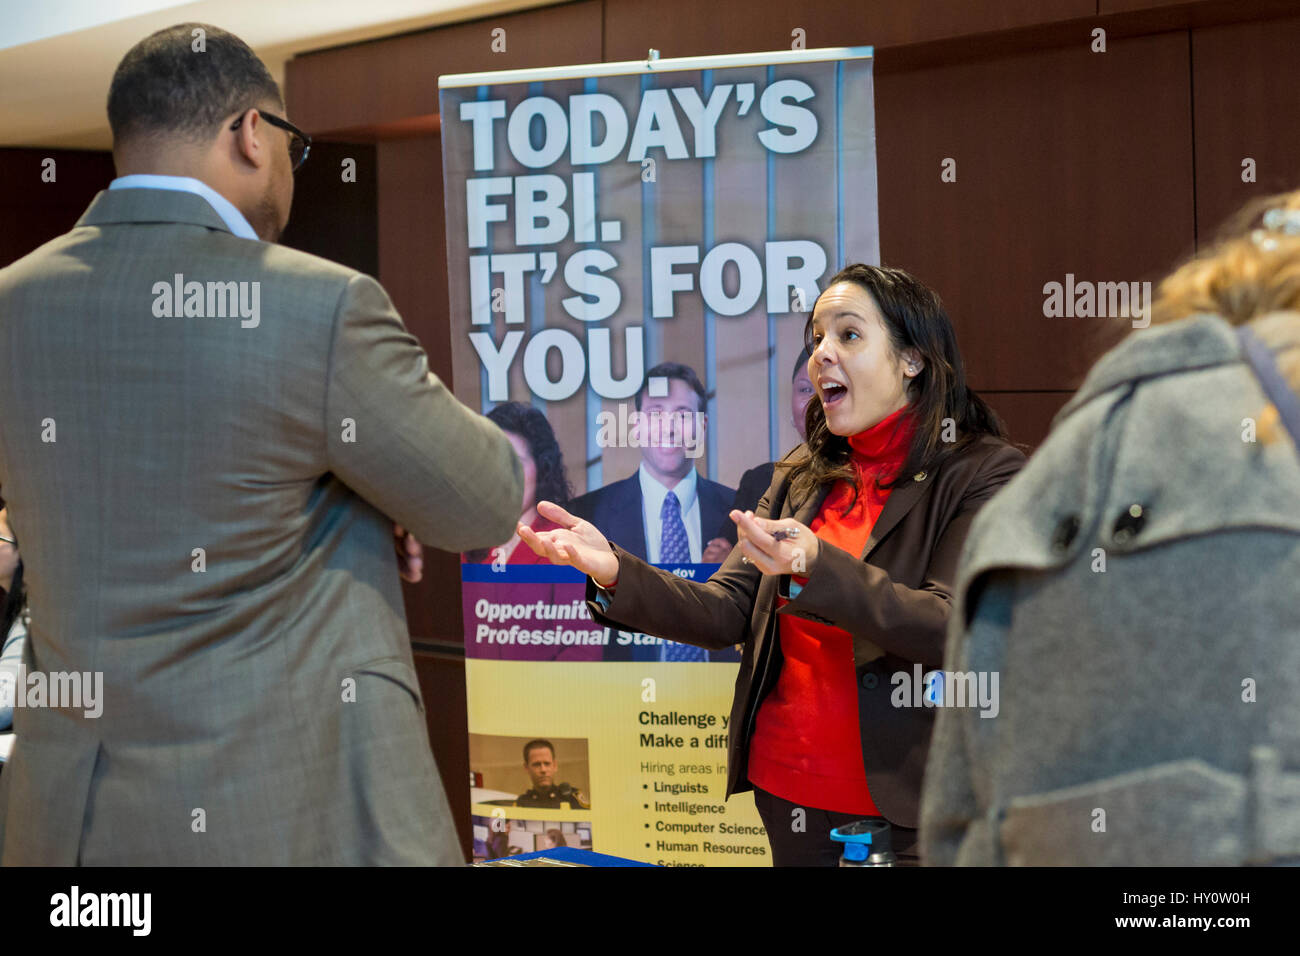 Dearborn, Michigan - l'FBI reclute a una fiera del lavoro sponsorizzato da accesso, la Comunità Araba Centro per il Comitato economico e sociale i servizi. Foto Stock